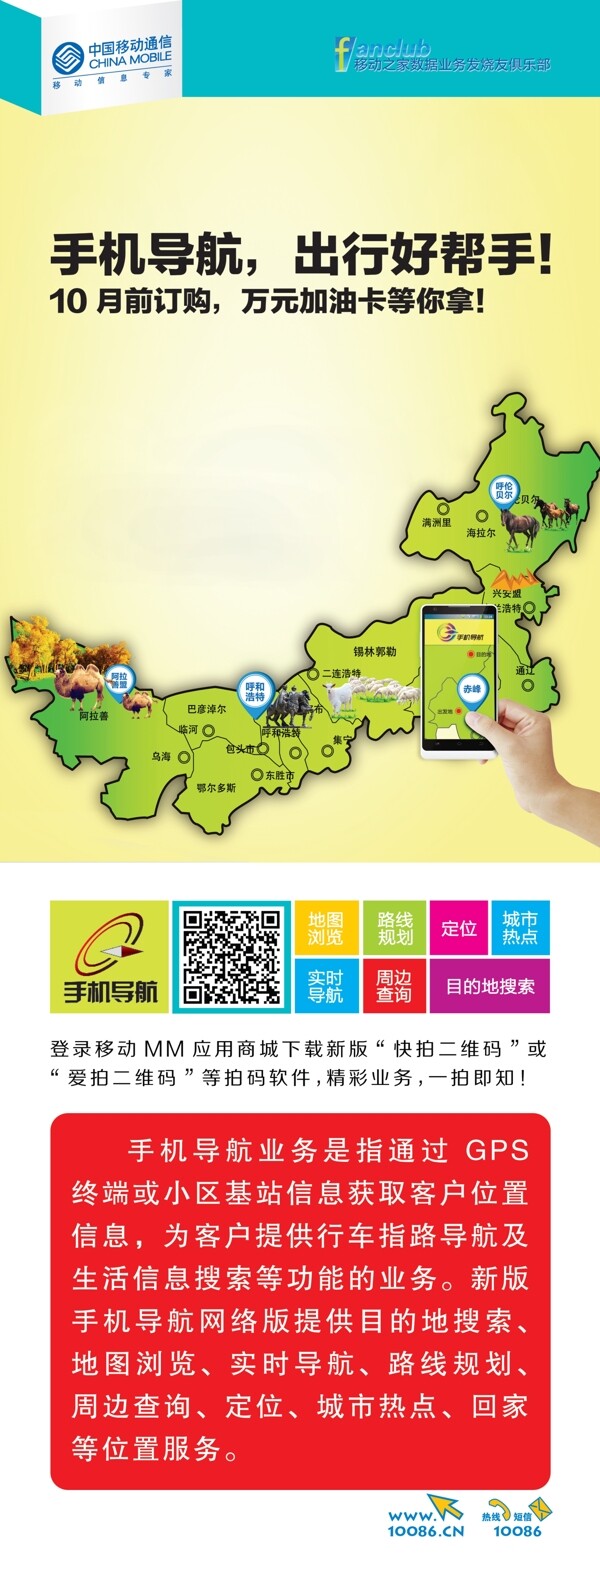 中国移动单页手机导航